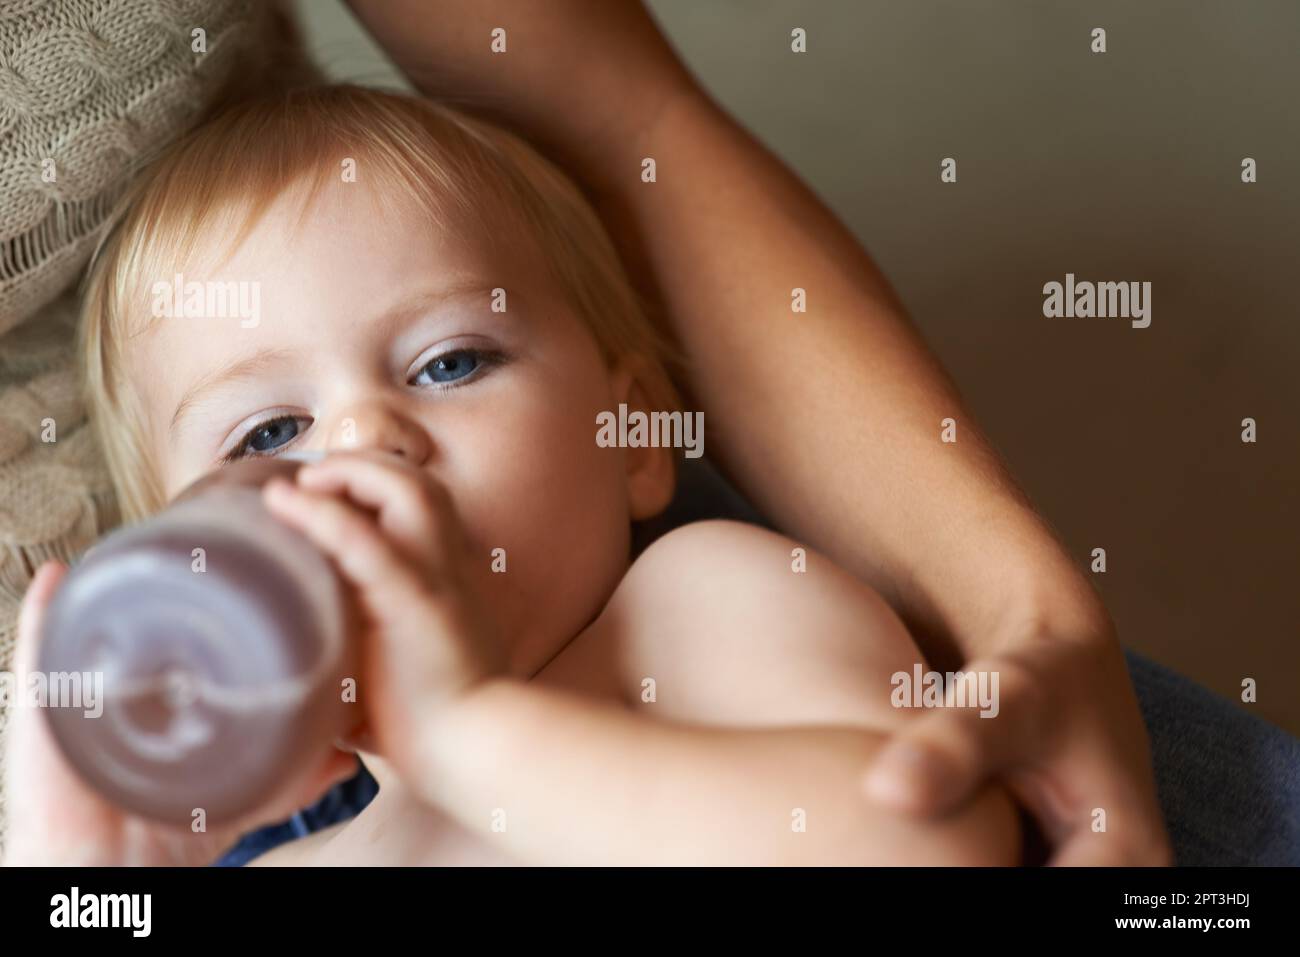 Bebé de 6 meses bebe agua de un biberón, acostado en la cama. bebe feliz y  alegre